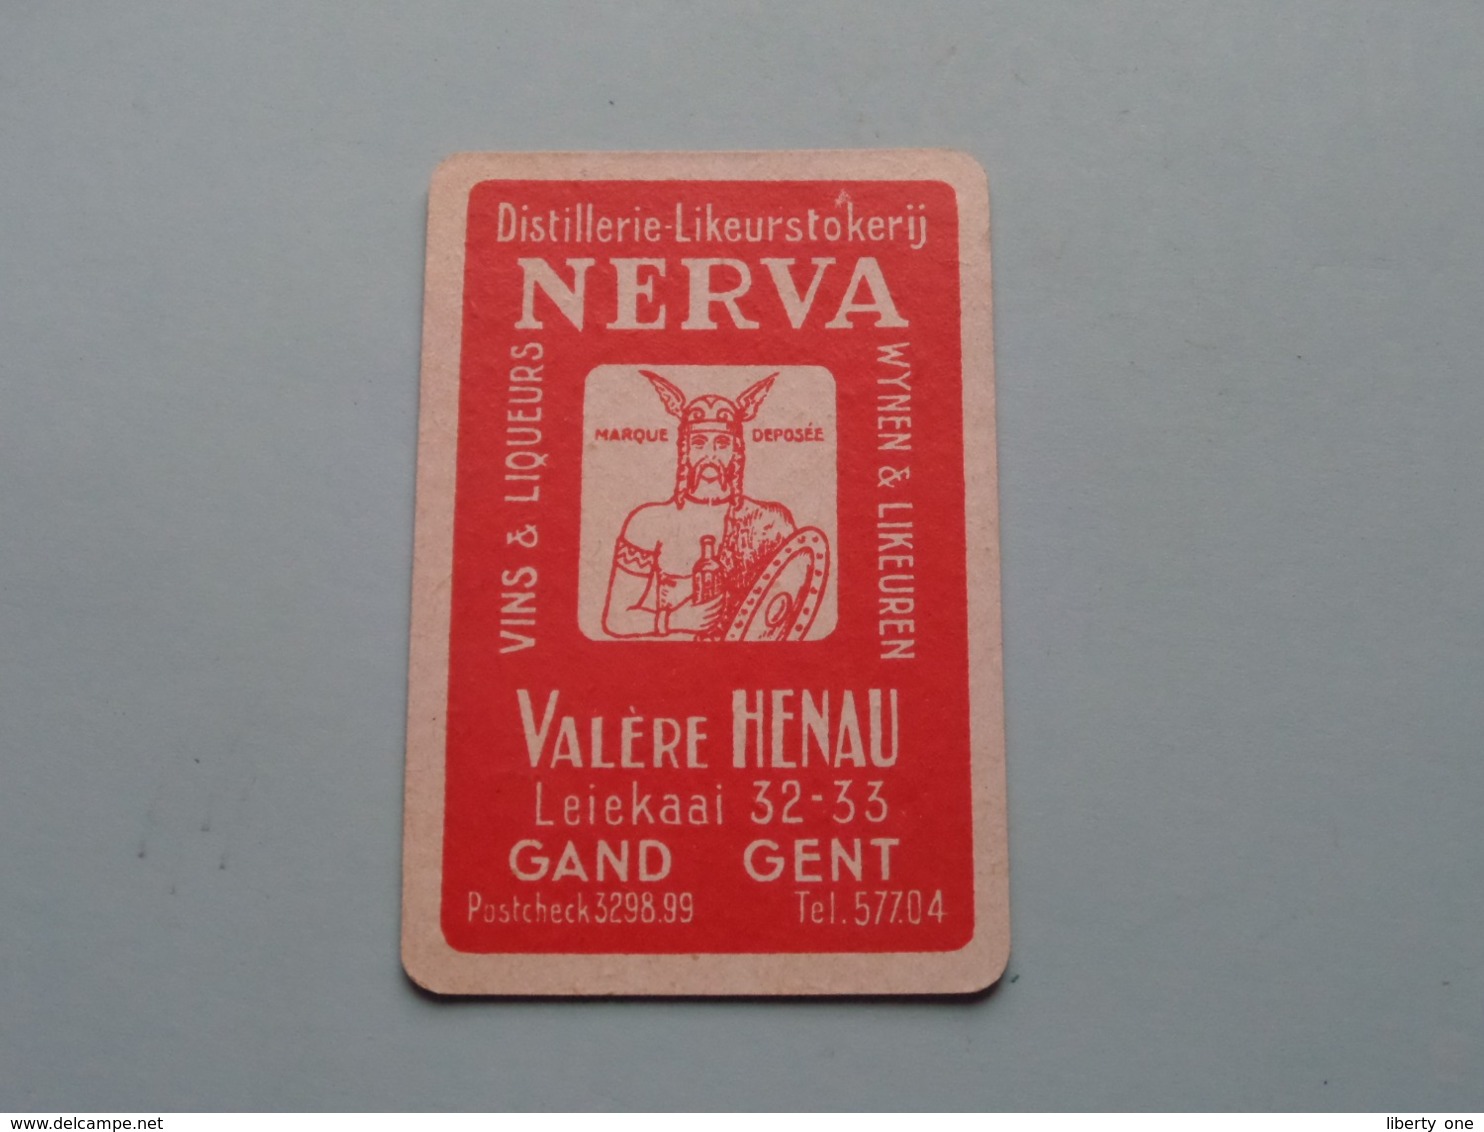 Distillerie-Likeurstokerij NERVA / Valère HENAU Gand Gent ( Schoppen 10 ) ( Details - Zie Foto's Voor En Achter ) ! - Playing Cards (classic)